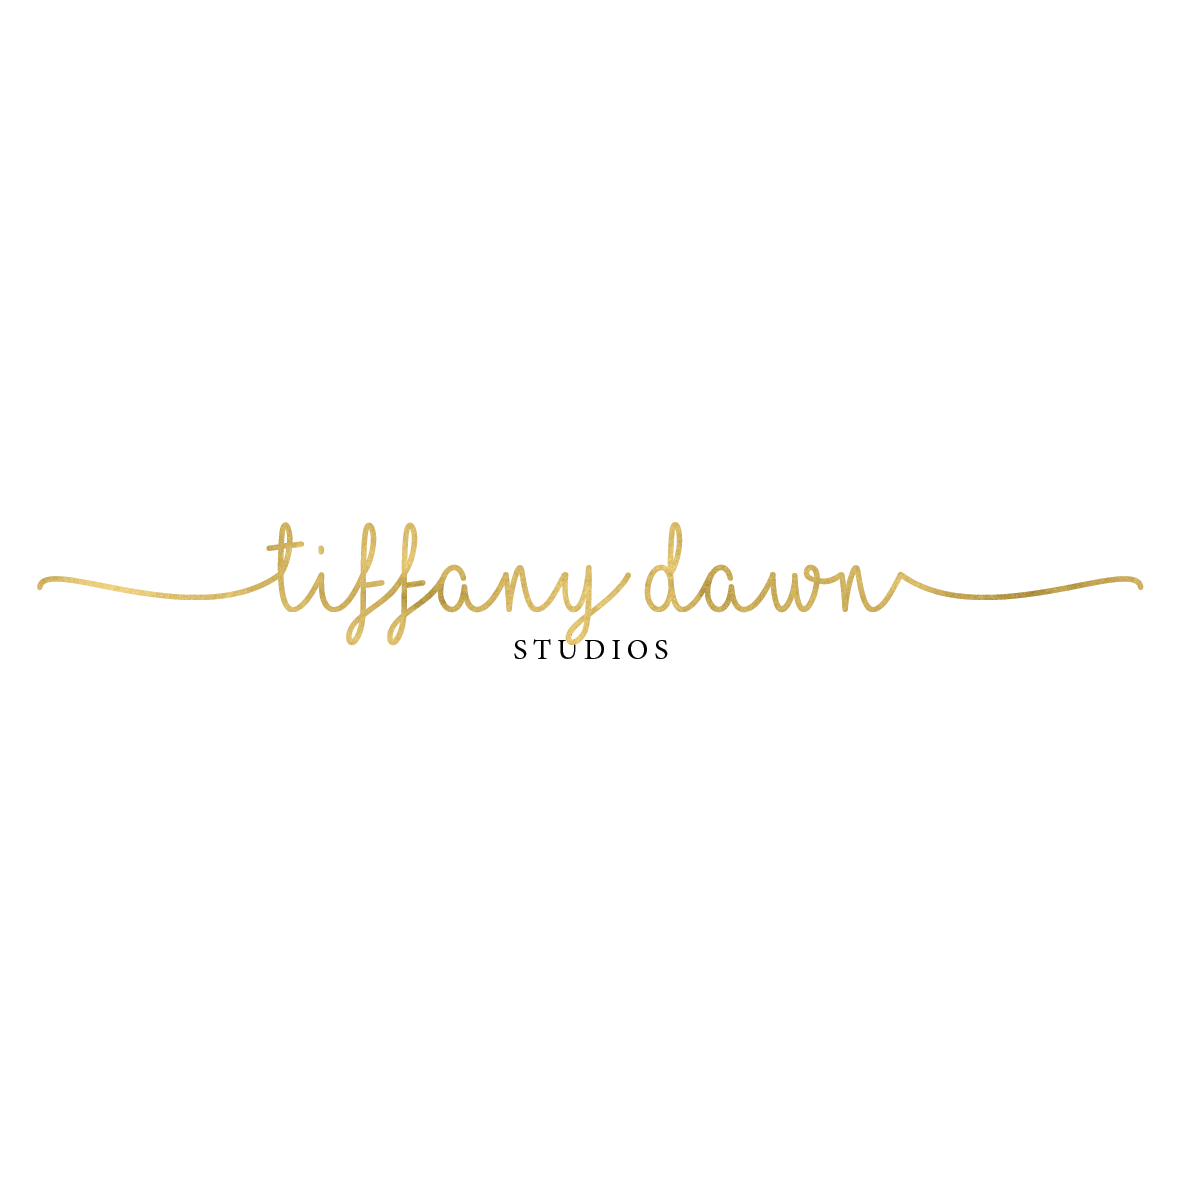 Tiffany Dawn Studios